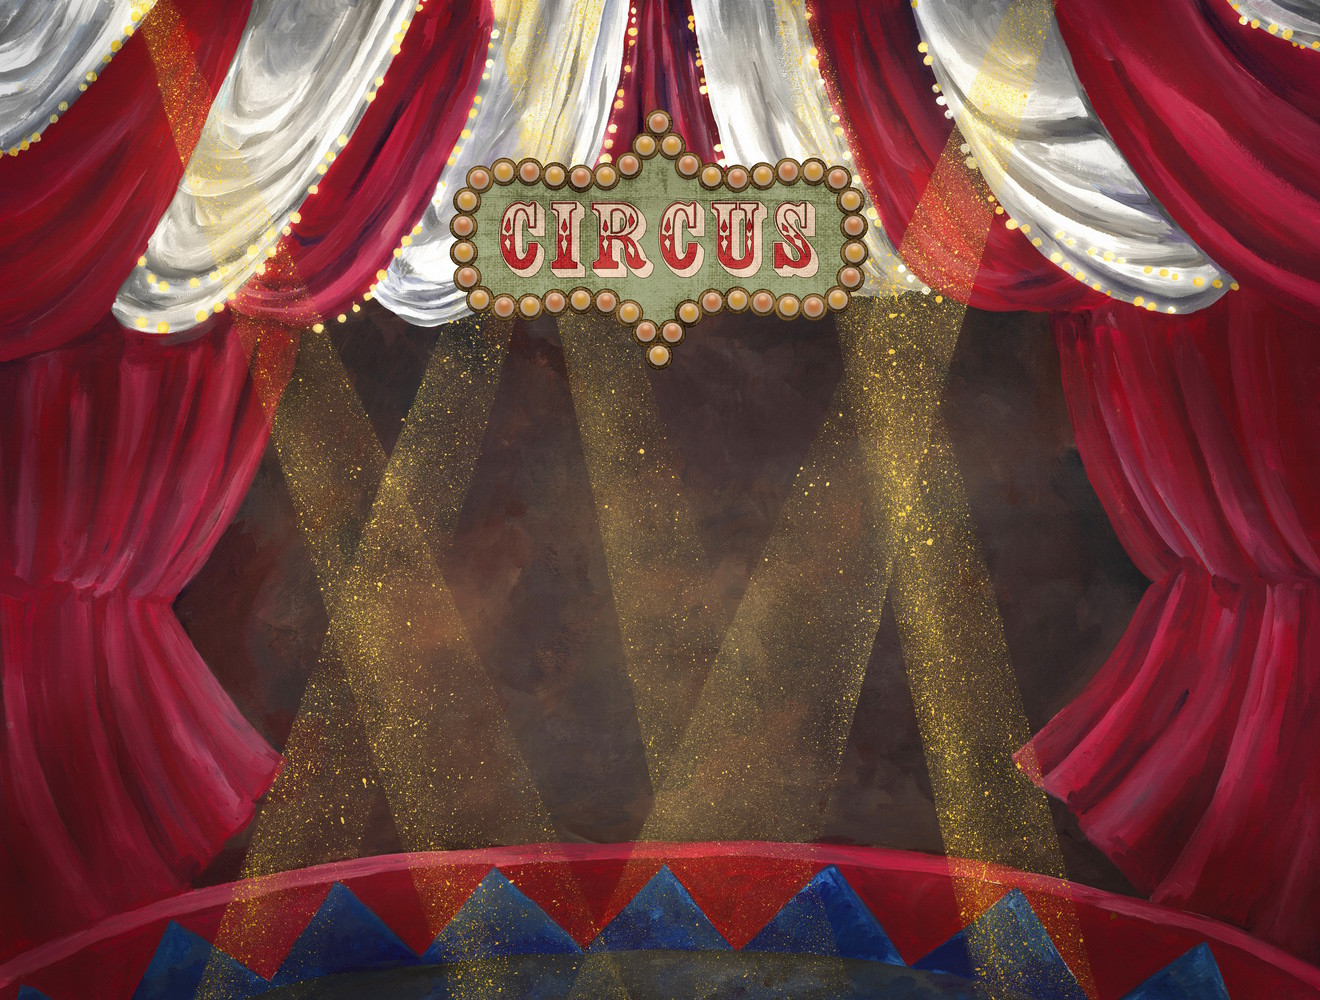 Backdrop "Circus"